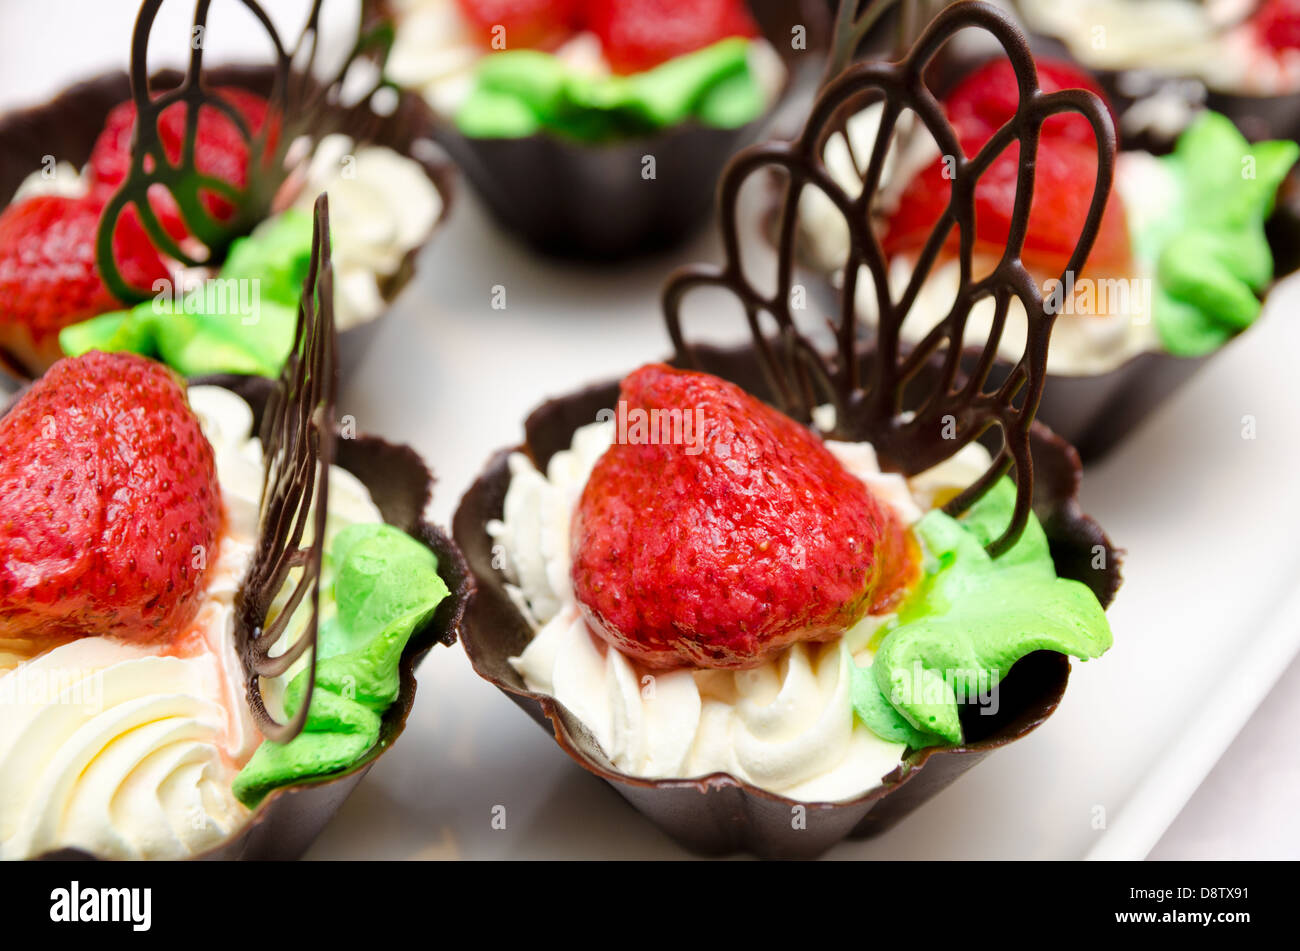 strawberries whip cream Stock Photo